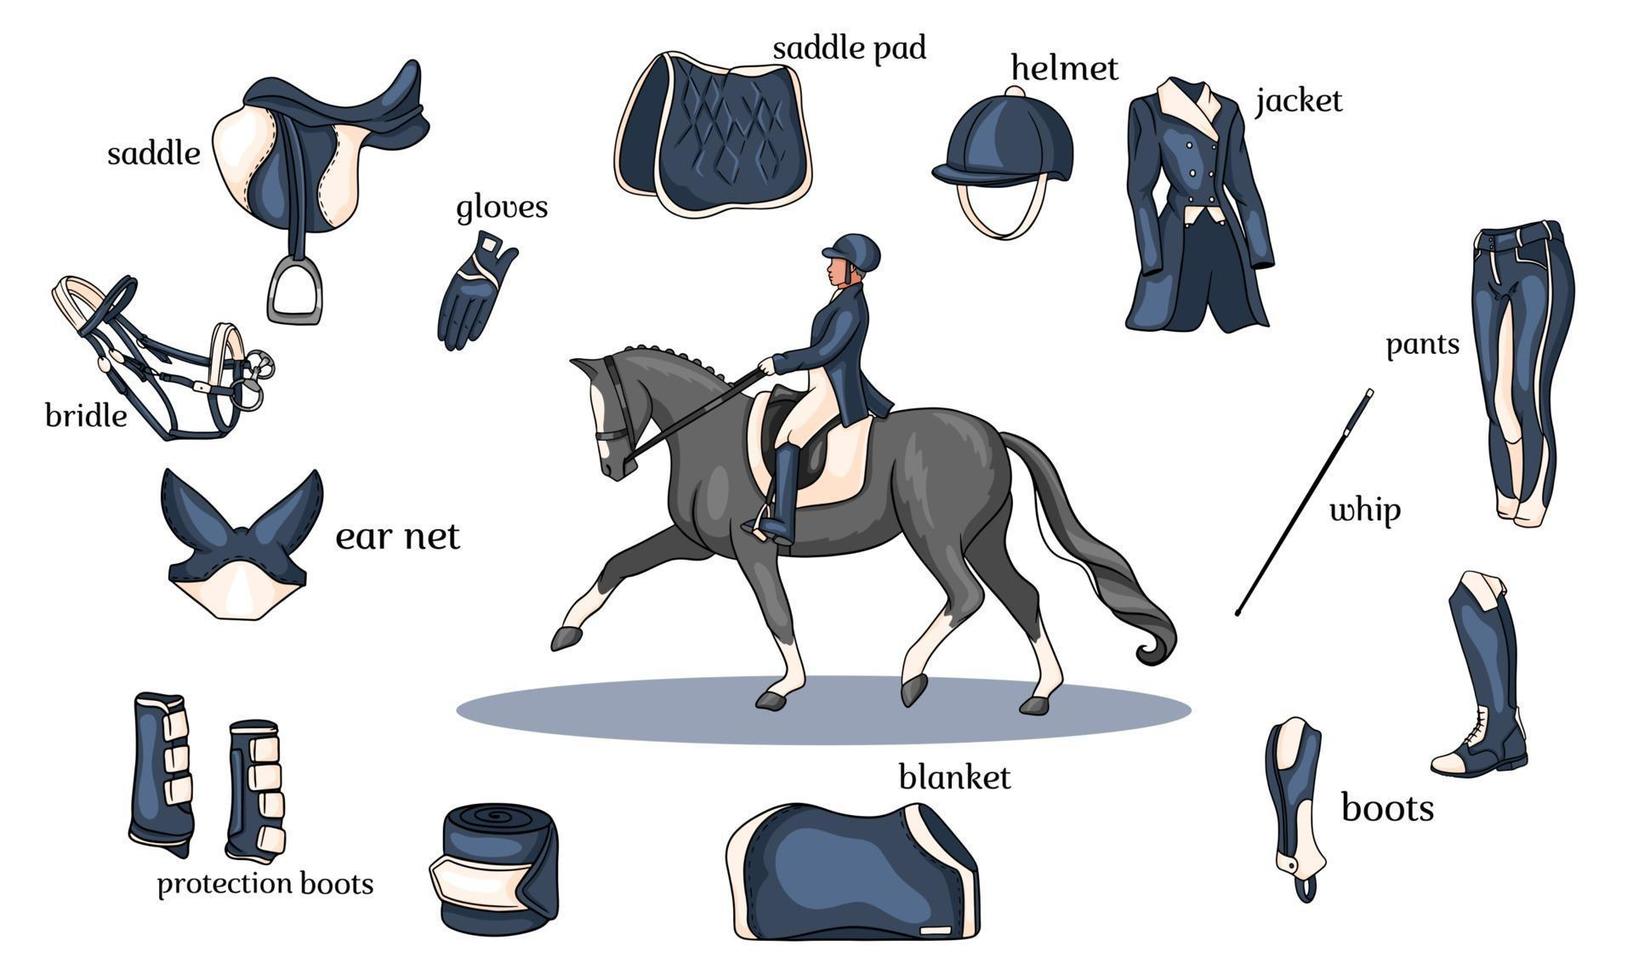 esporte equestre infográficos arnês de cavalo e equipamento de cavaleiro no centro de um cavaleiro em um cavalo em estilo cartoon vetor